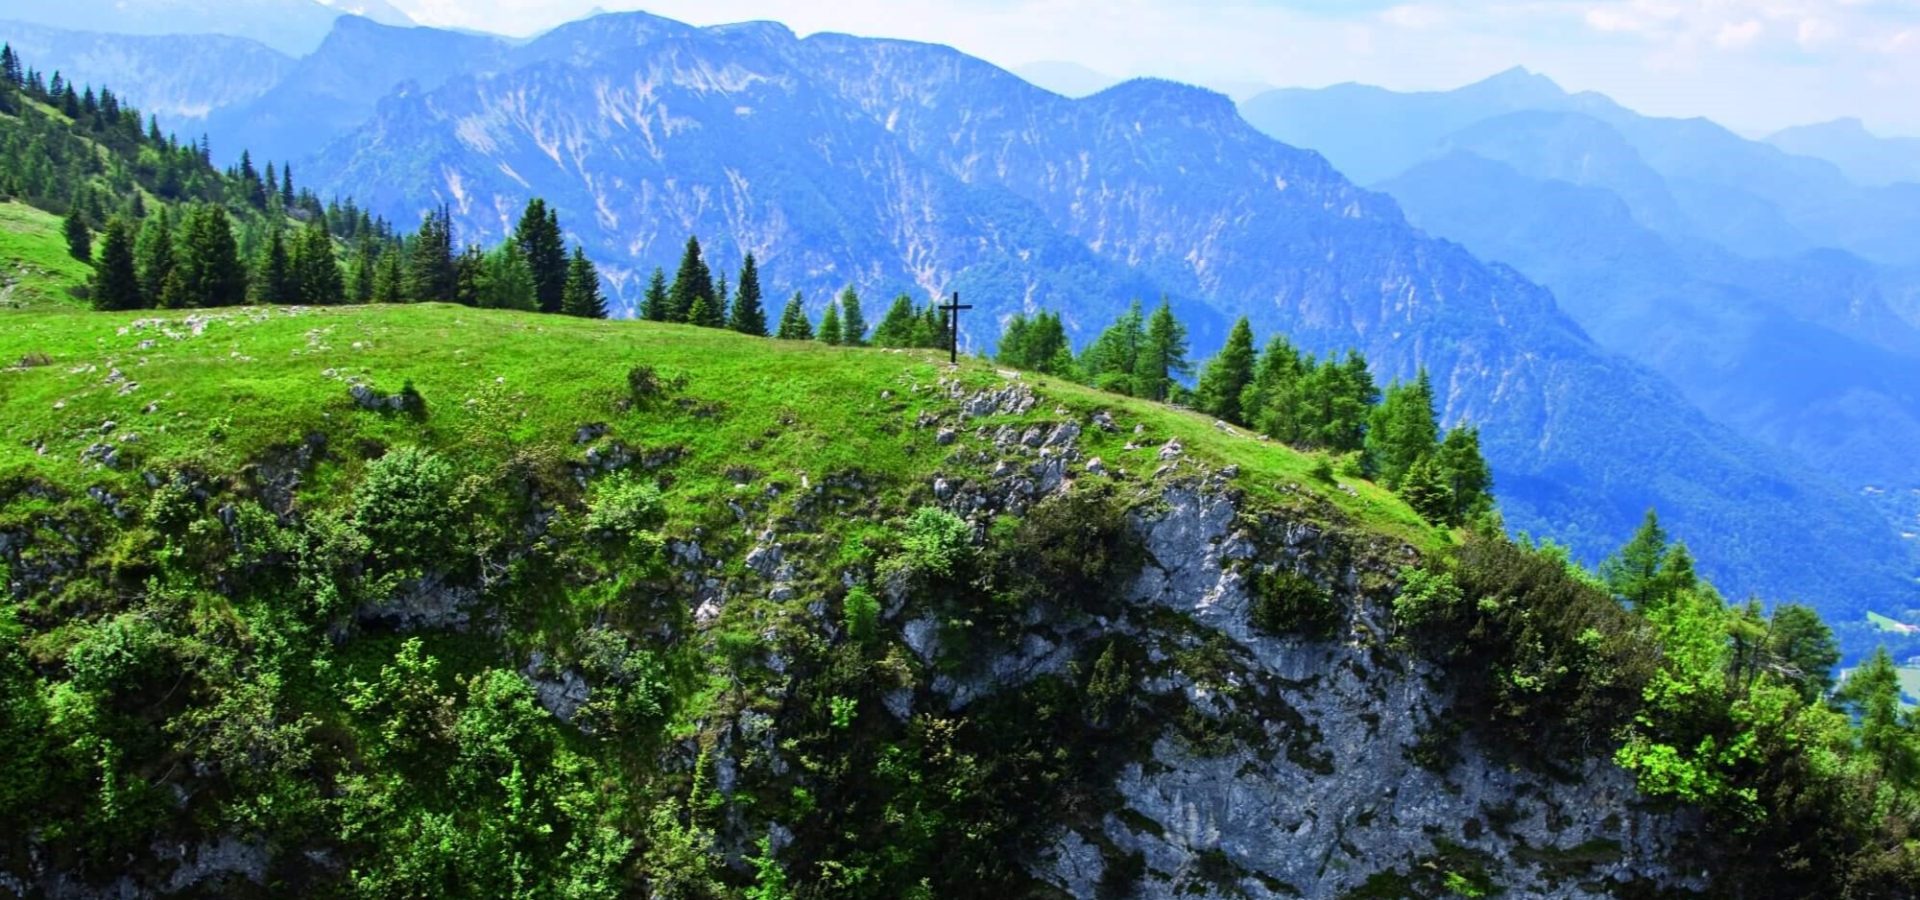 paxnatura Naturbestattung - Naturfriedhof Vierkasernalm in 1600m Höhe auf dem Untersberg, bietet für immer einen einzigartigen Ausblick.